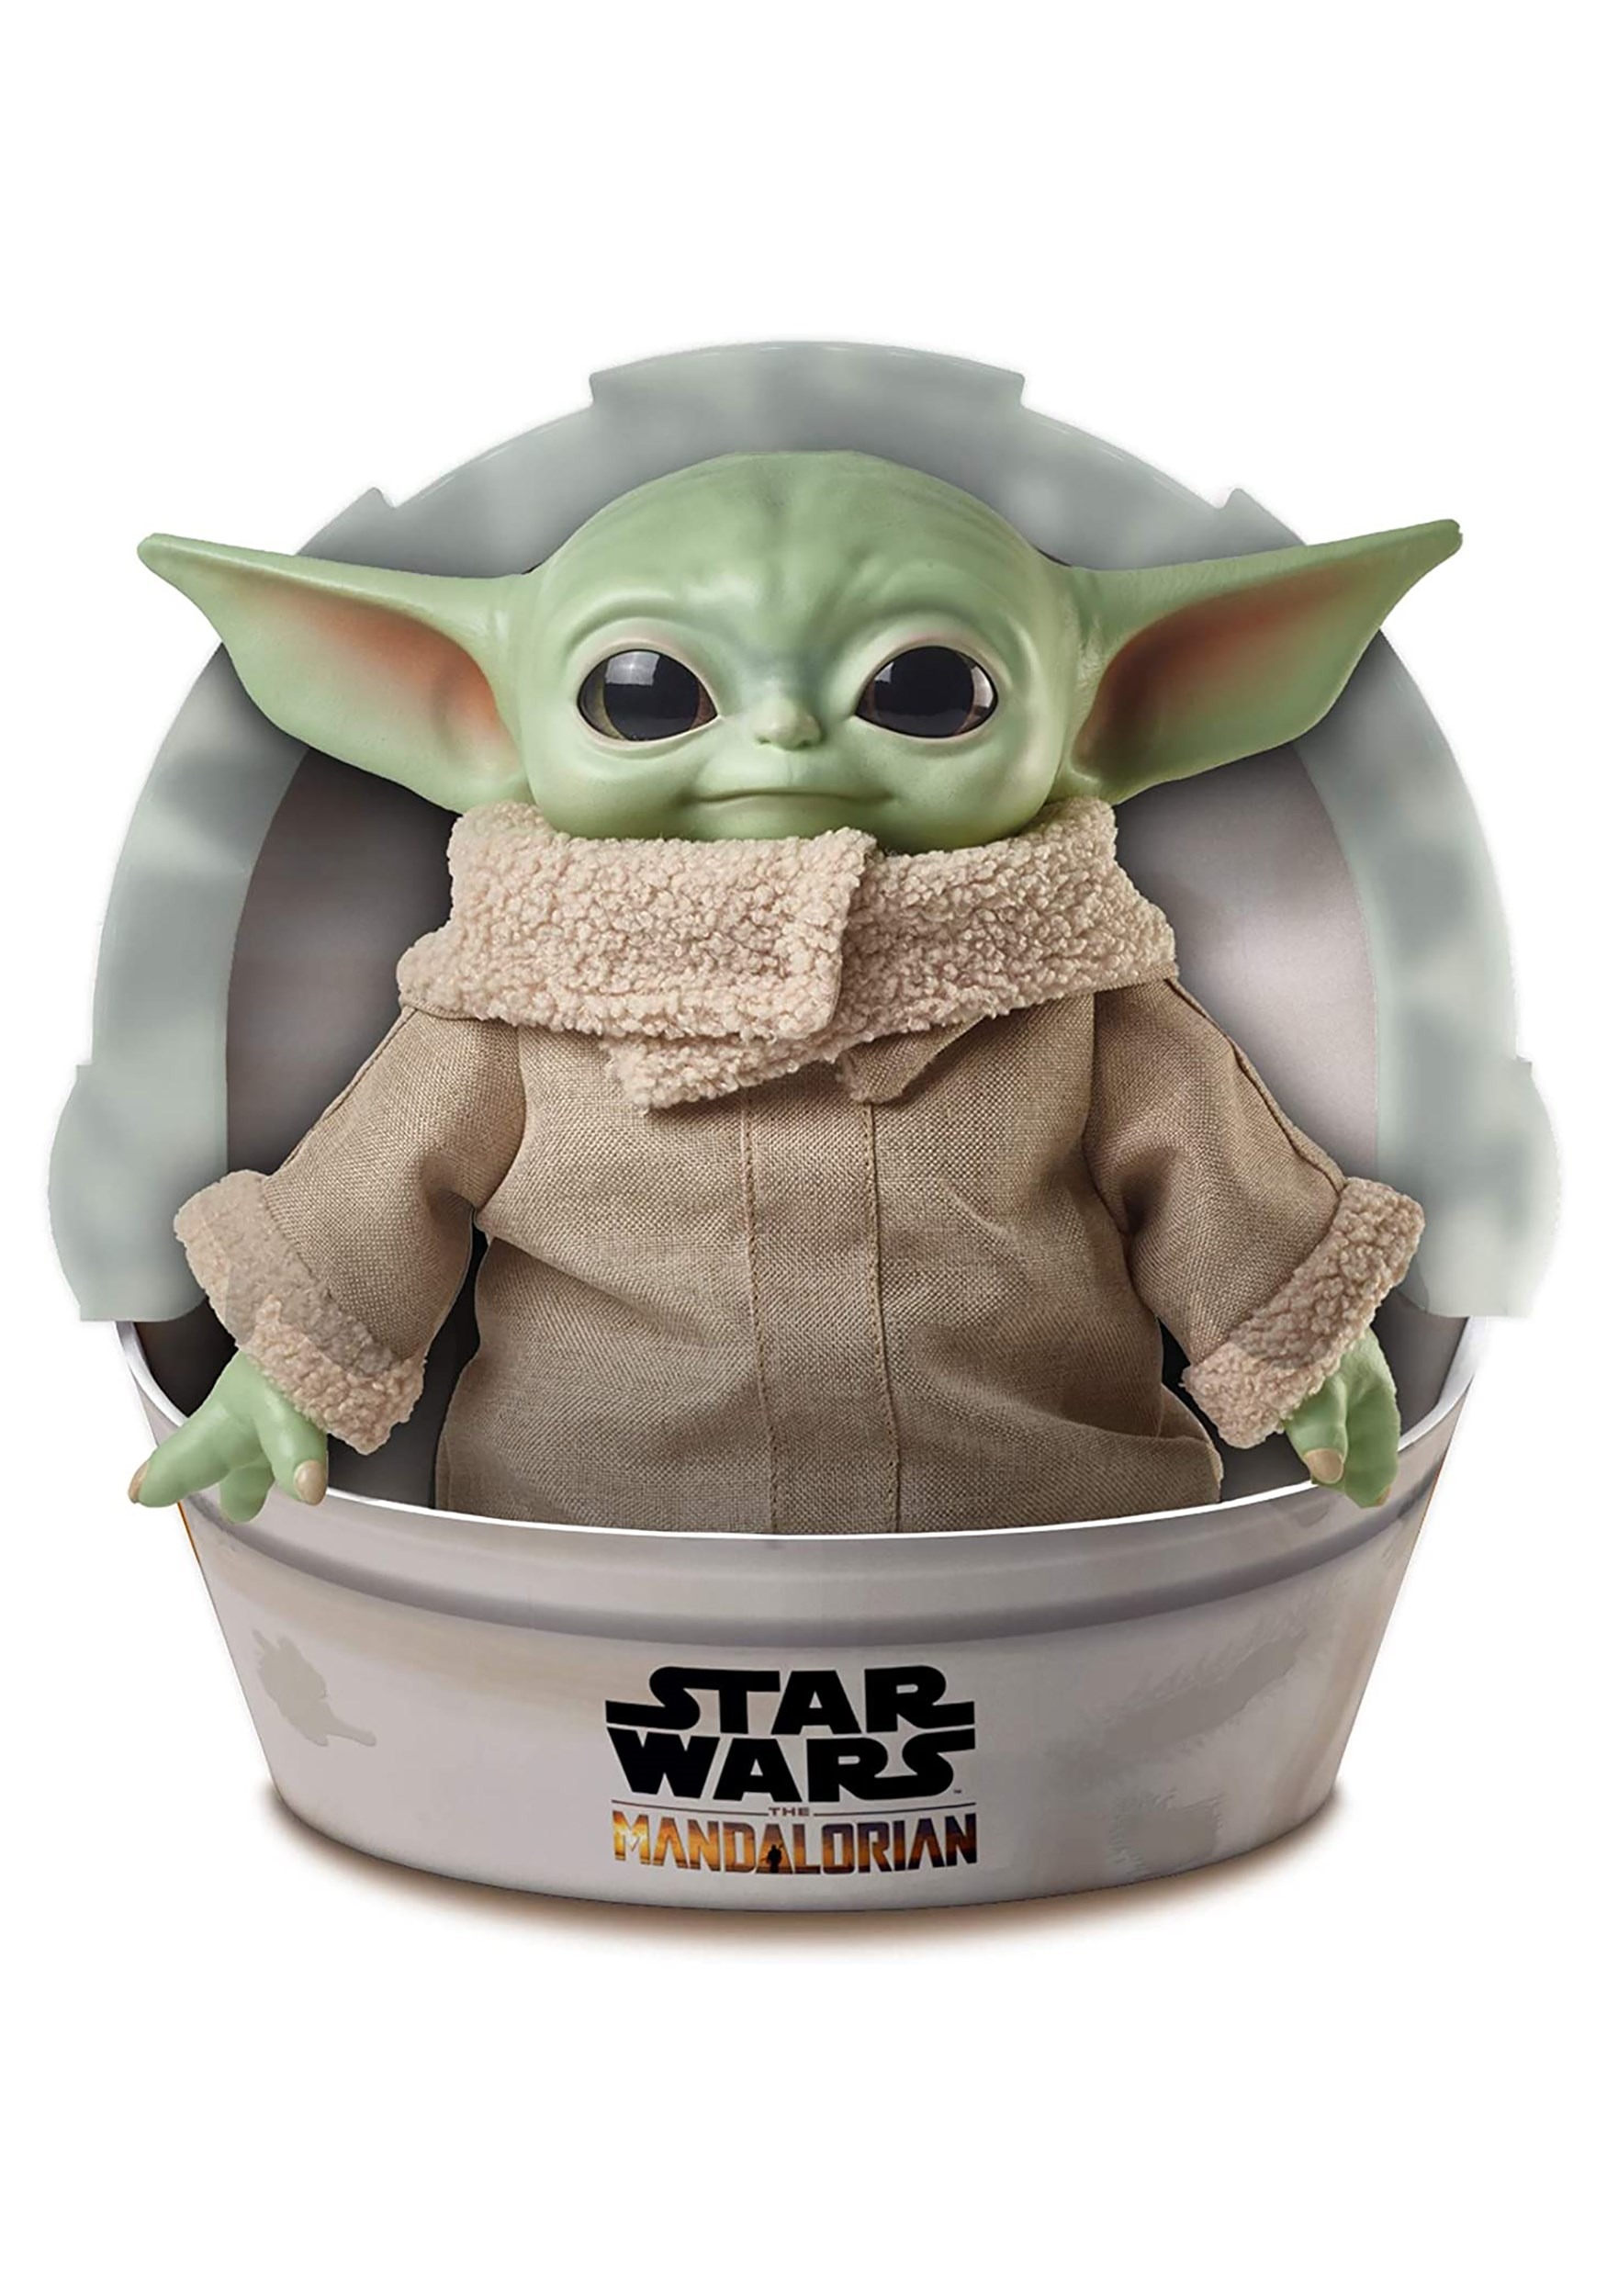 Baby Yoda Keychain Plush • Magic Plush